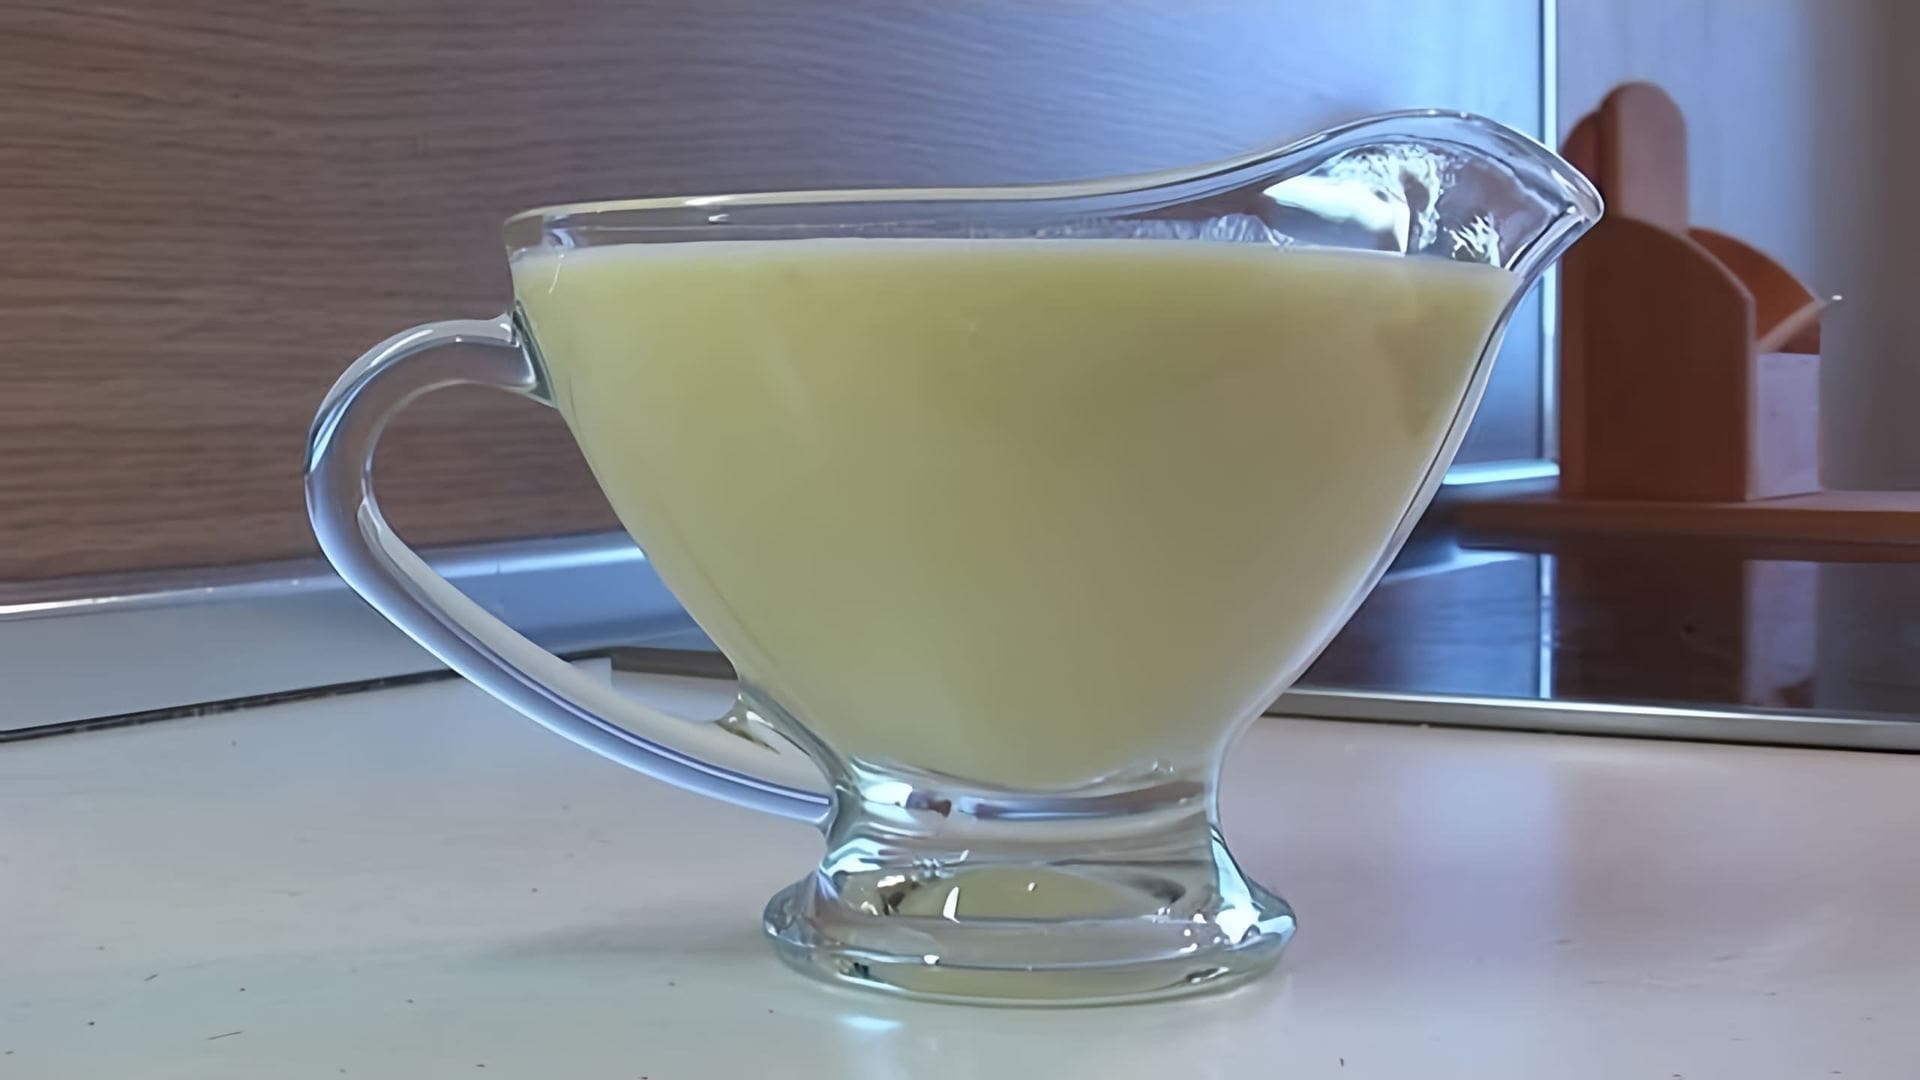 В этом видео демонстрируется рецепт приготовления ванильного соуса из книги "О вкусной и здоровой пище"